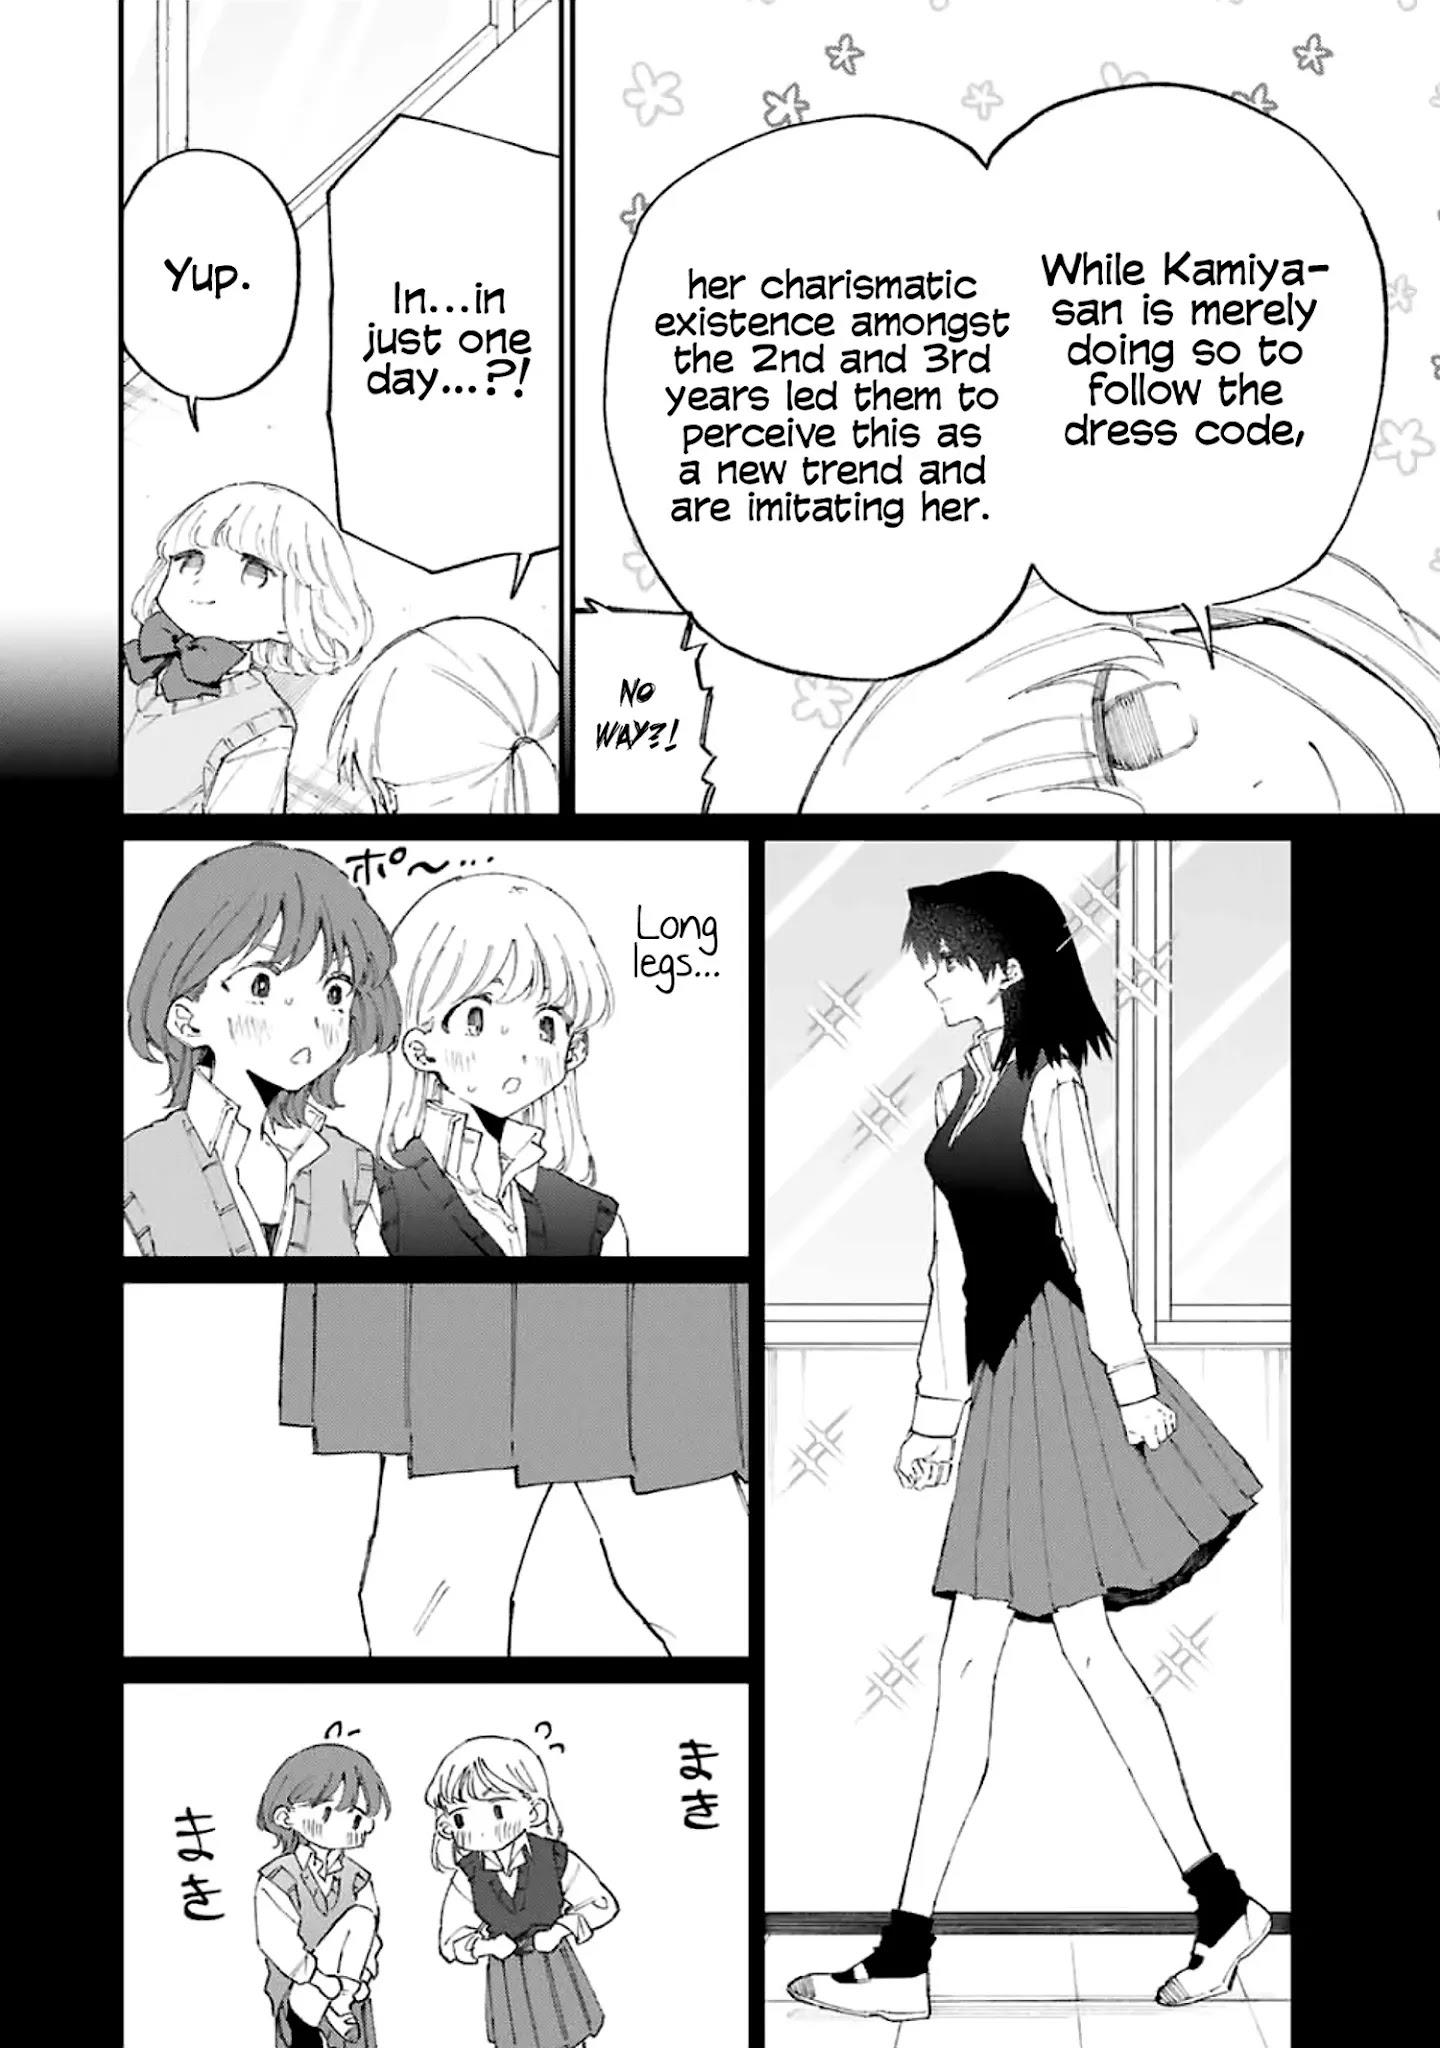 Shikimori's Not Just A Cutie Chapter 124 page 5 - Mangakakalots.com